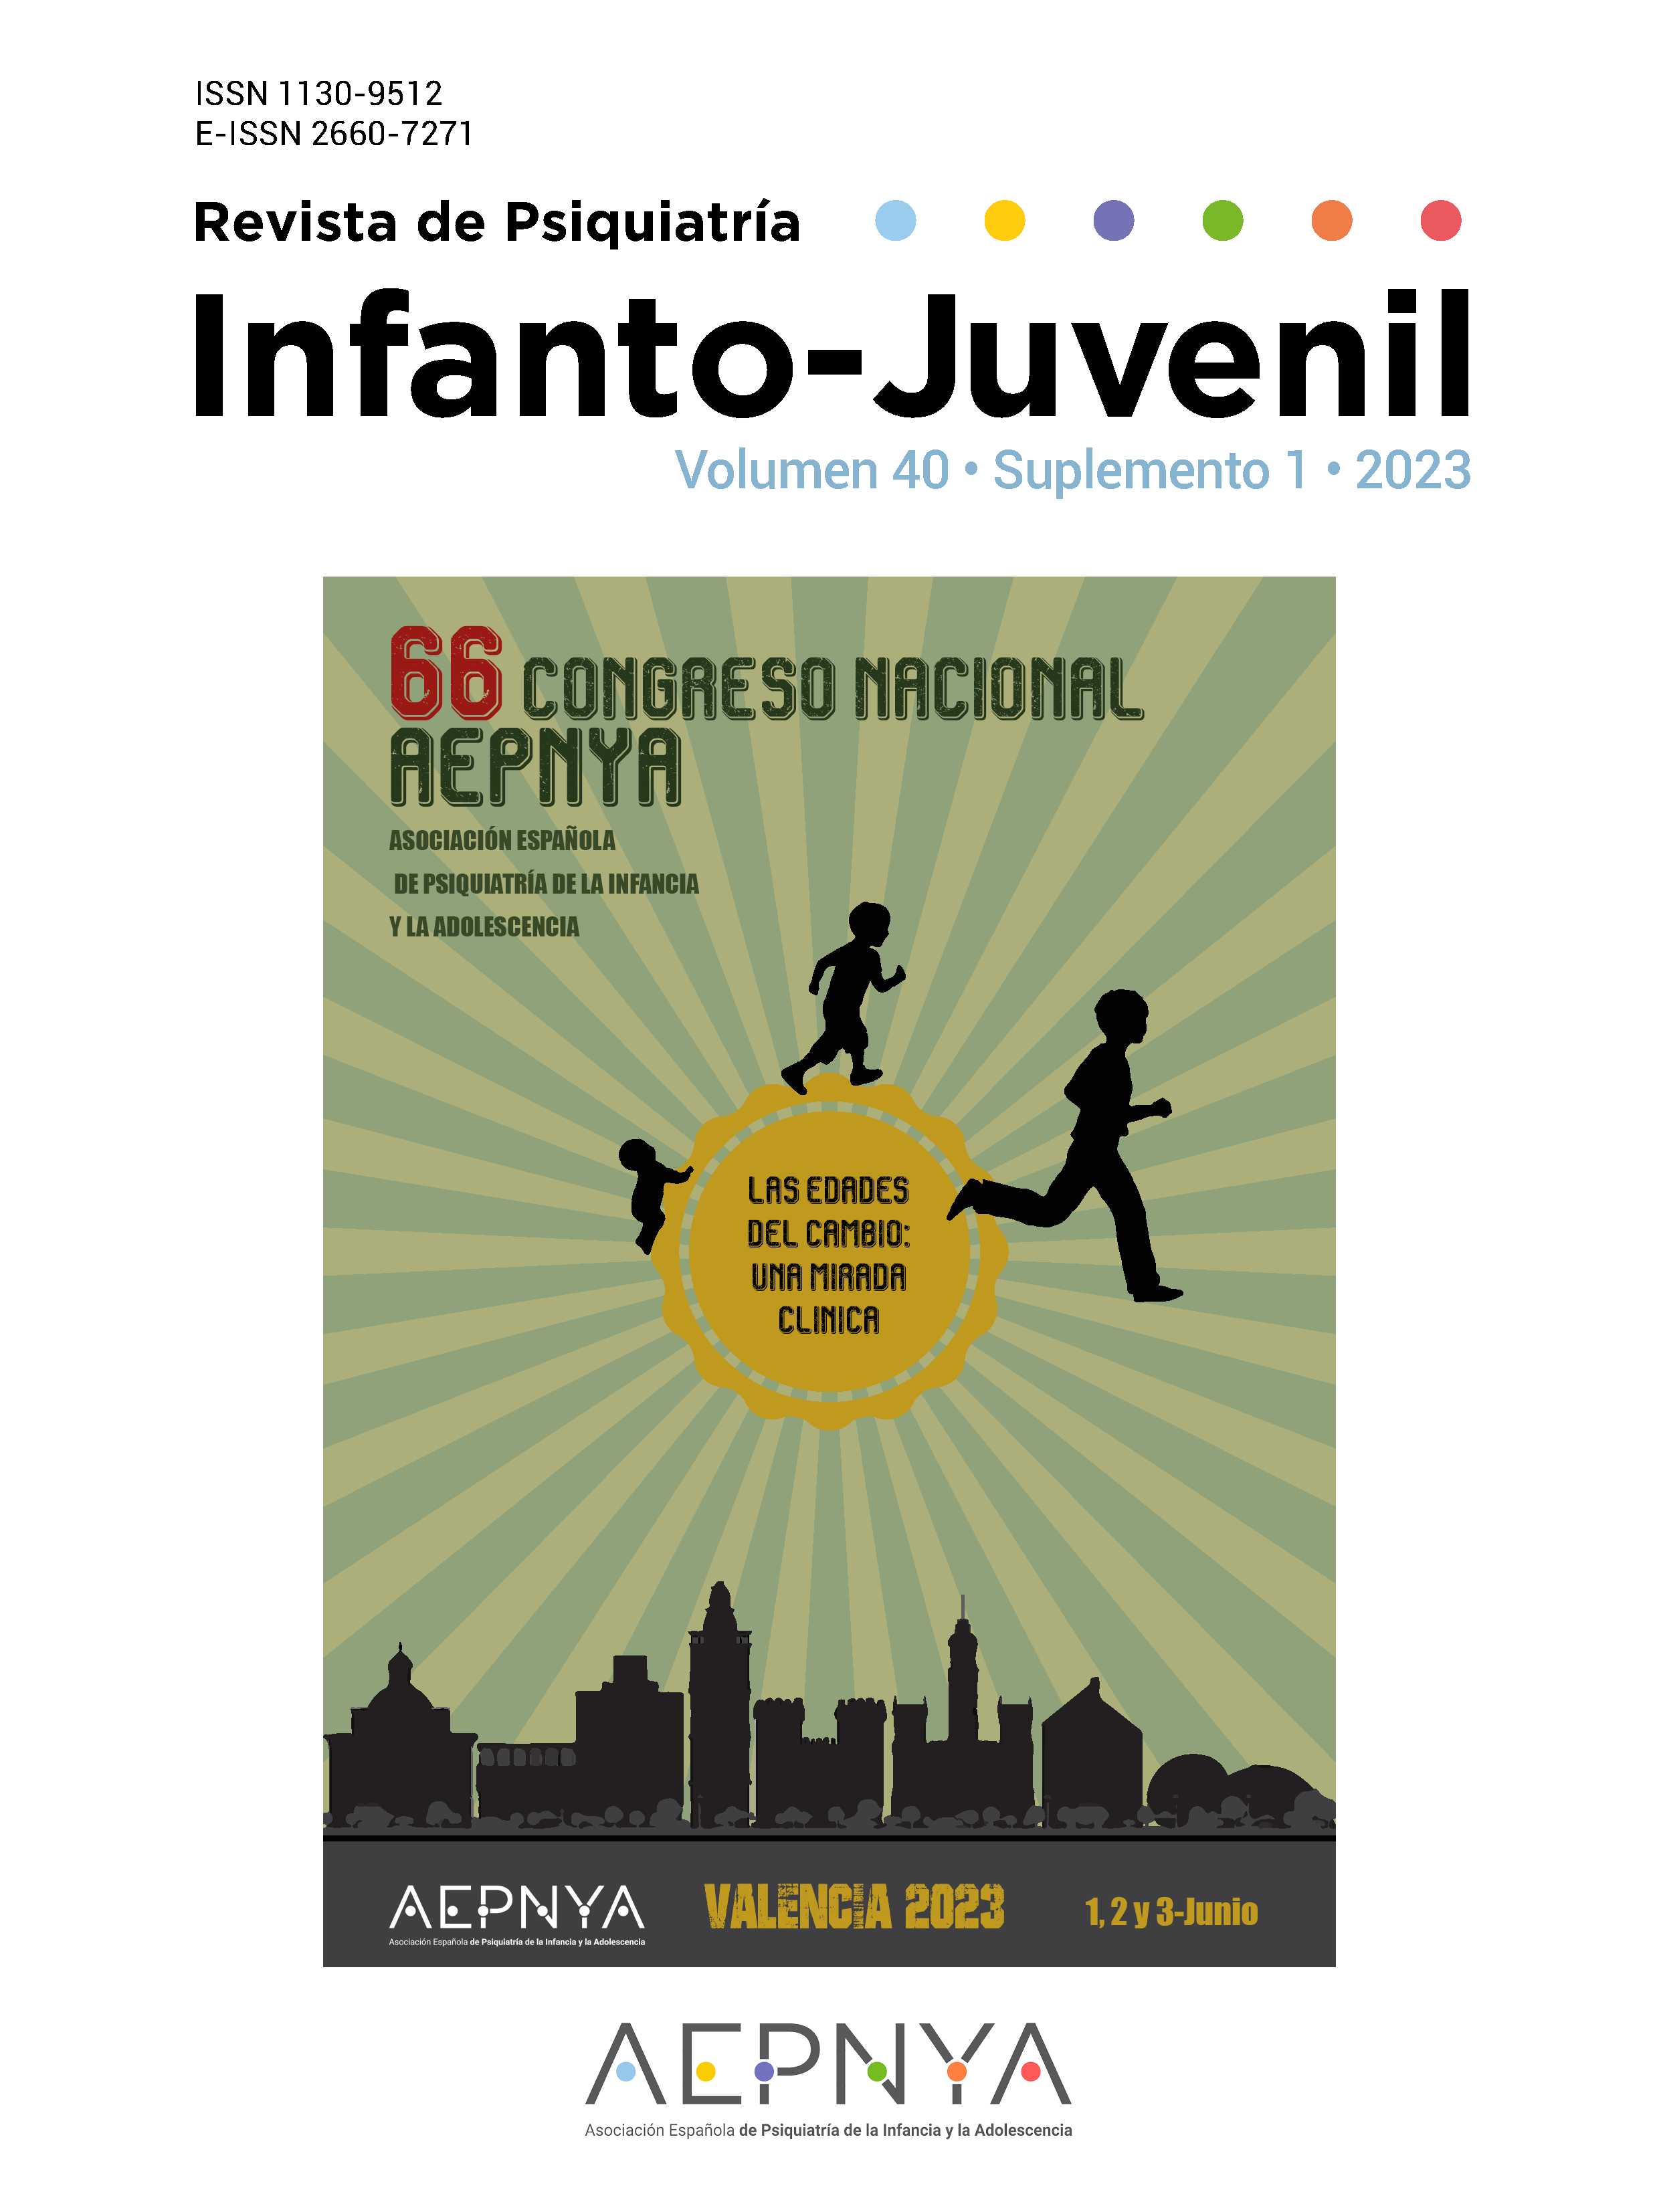 					Ver Vol. 40 Núm. Supl. 1 (2023): 66 Congreso Nacional de la Asociación Española de Psiquiatría de la Infancia y la Adolescencia (AEPNYA)
				